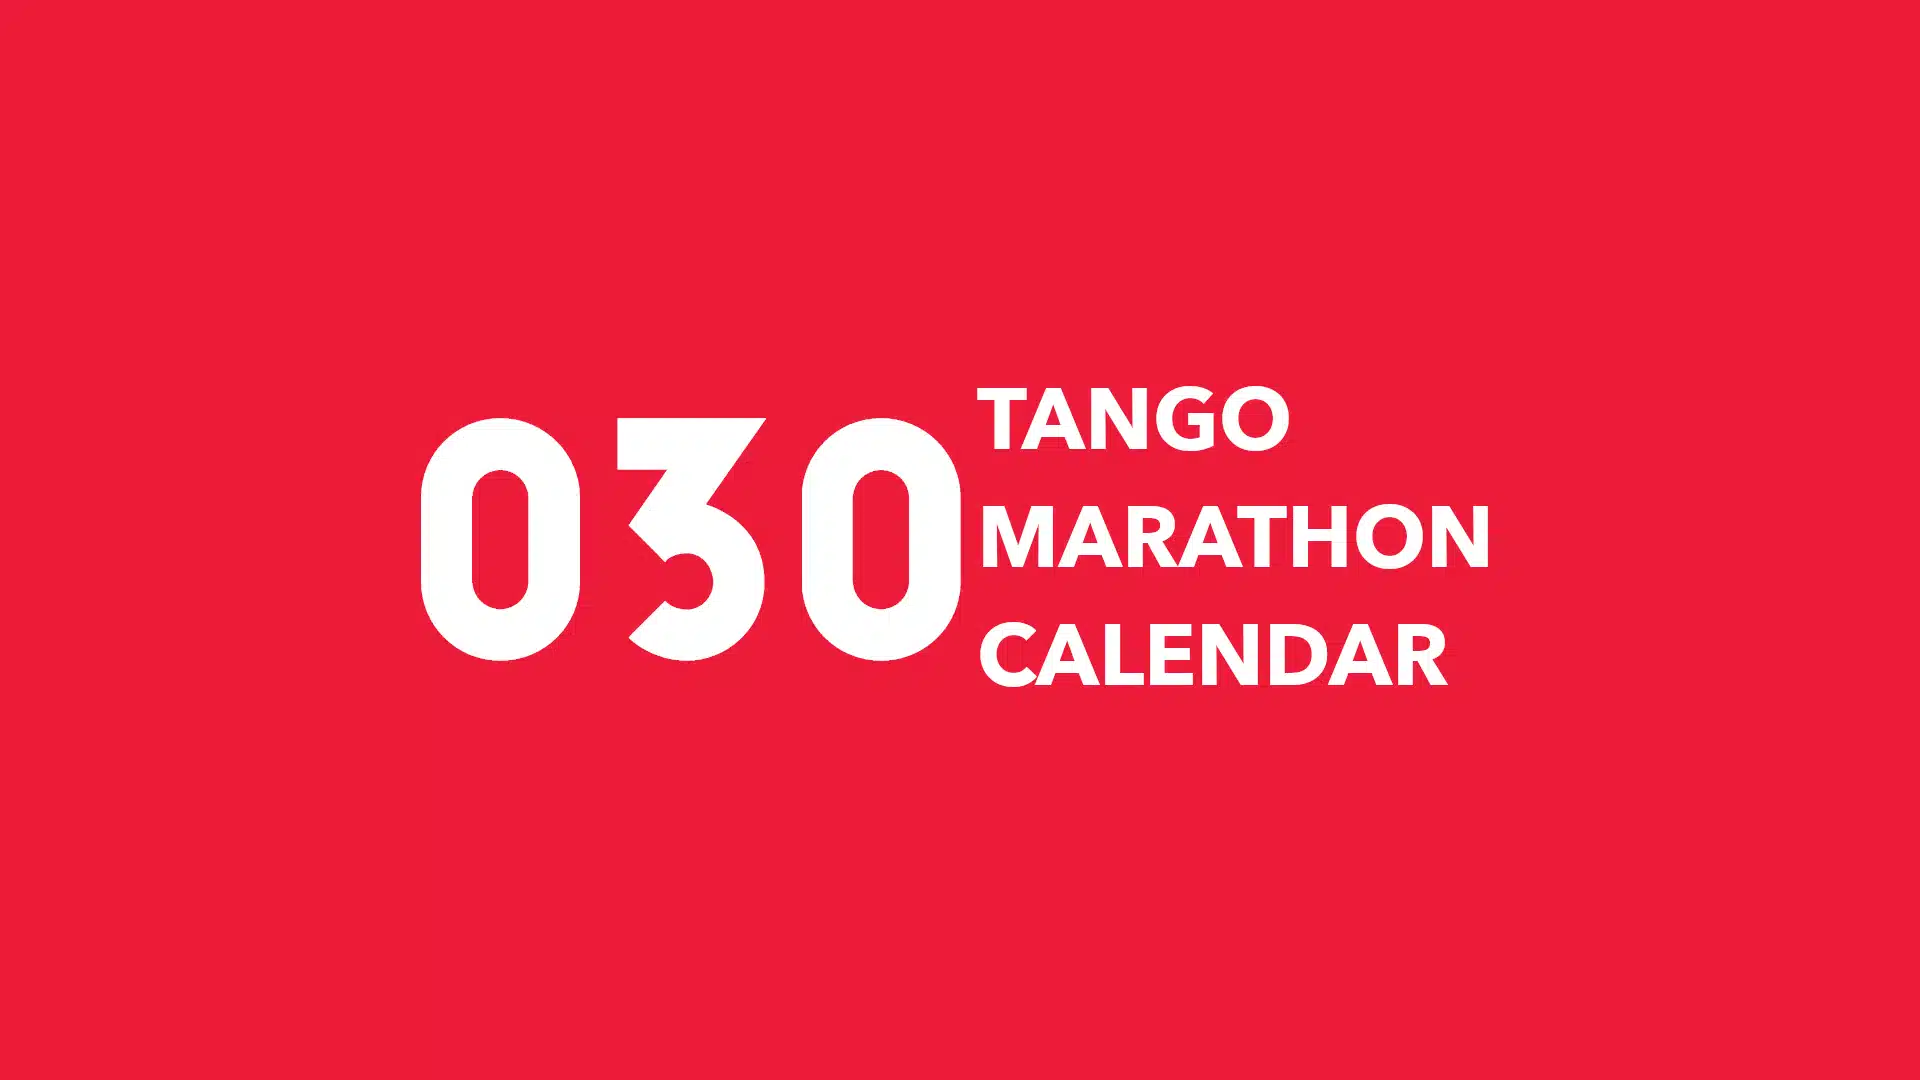 Tango Marathon Calendar